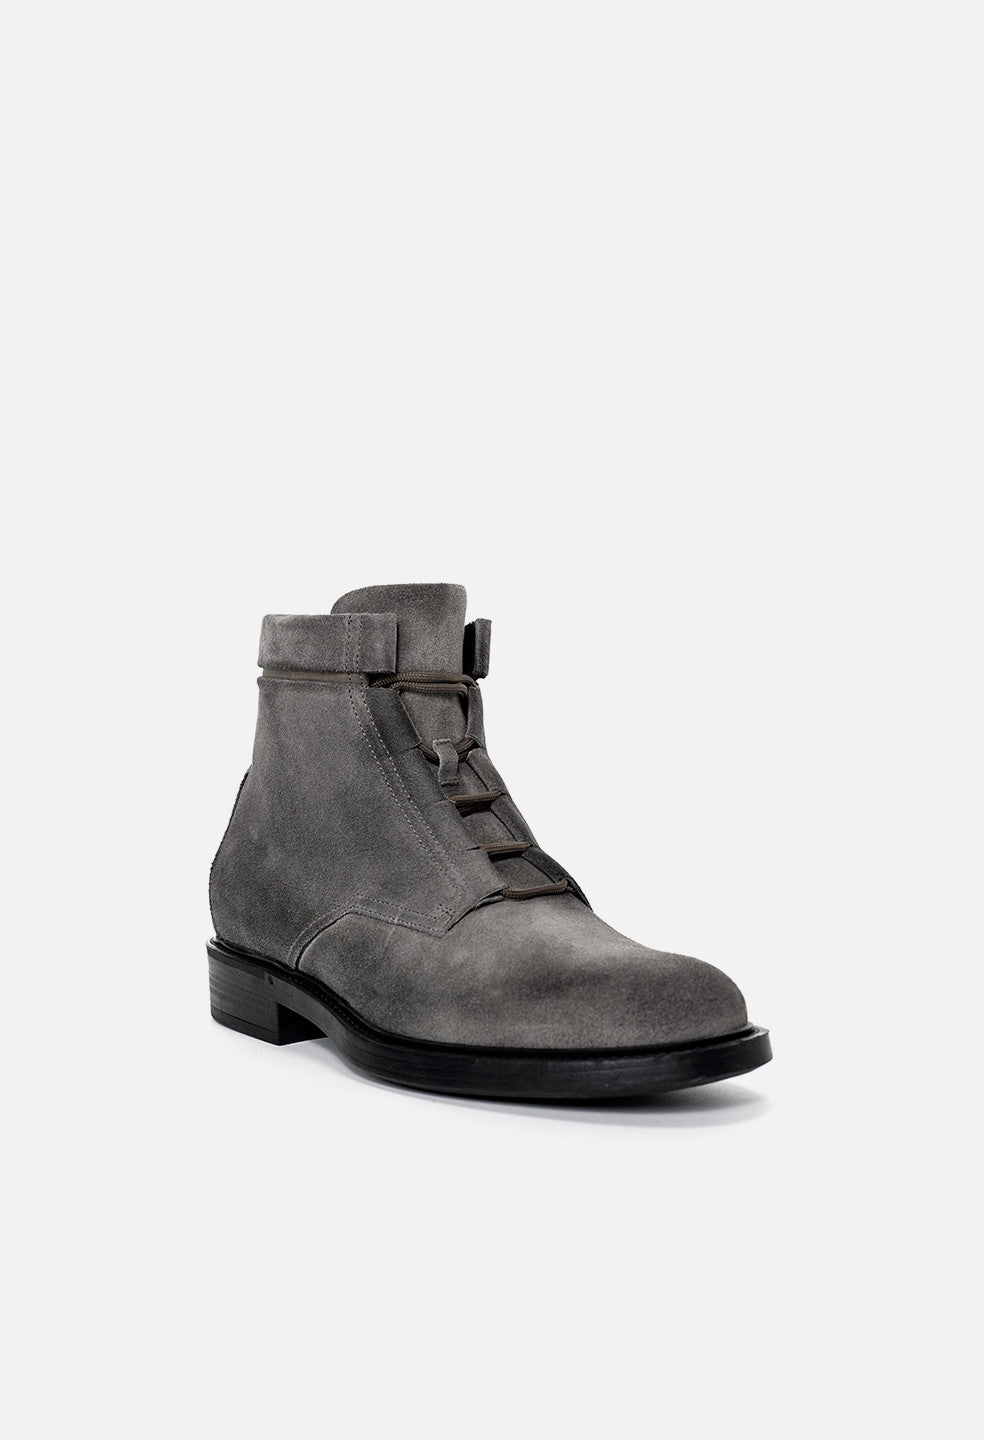 grey suede combat boots